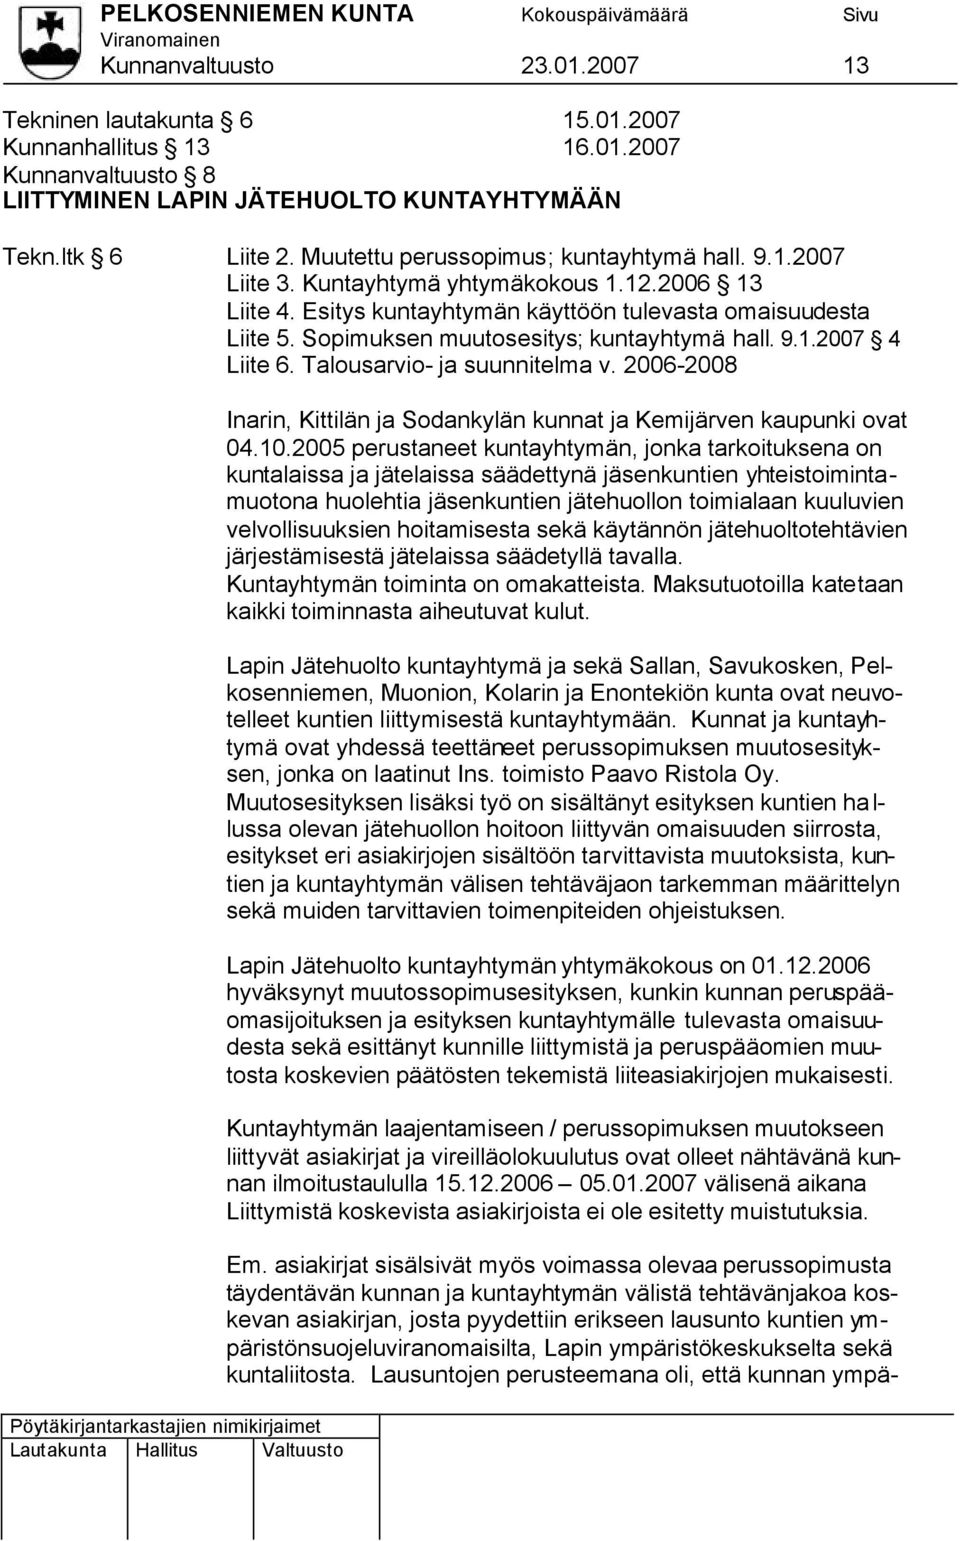 Sopimuksen muutosesitys; kuntayhtymä hall. 9.1.2007 4 Liite 6. Talousarvio- ja suunnitelma v. 2006-2008 Inarin, Kittilän ja Sodankylän kunnat ja Kemijärven kaupunki ovat 04.10.